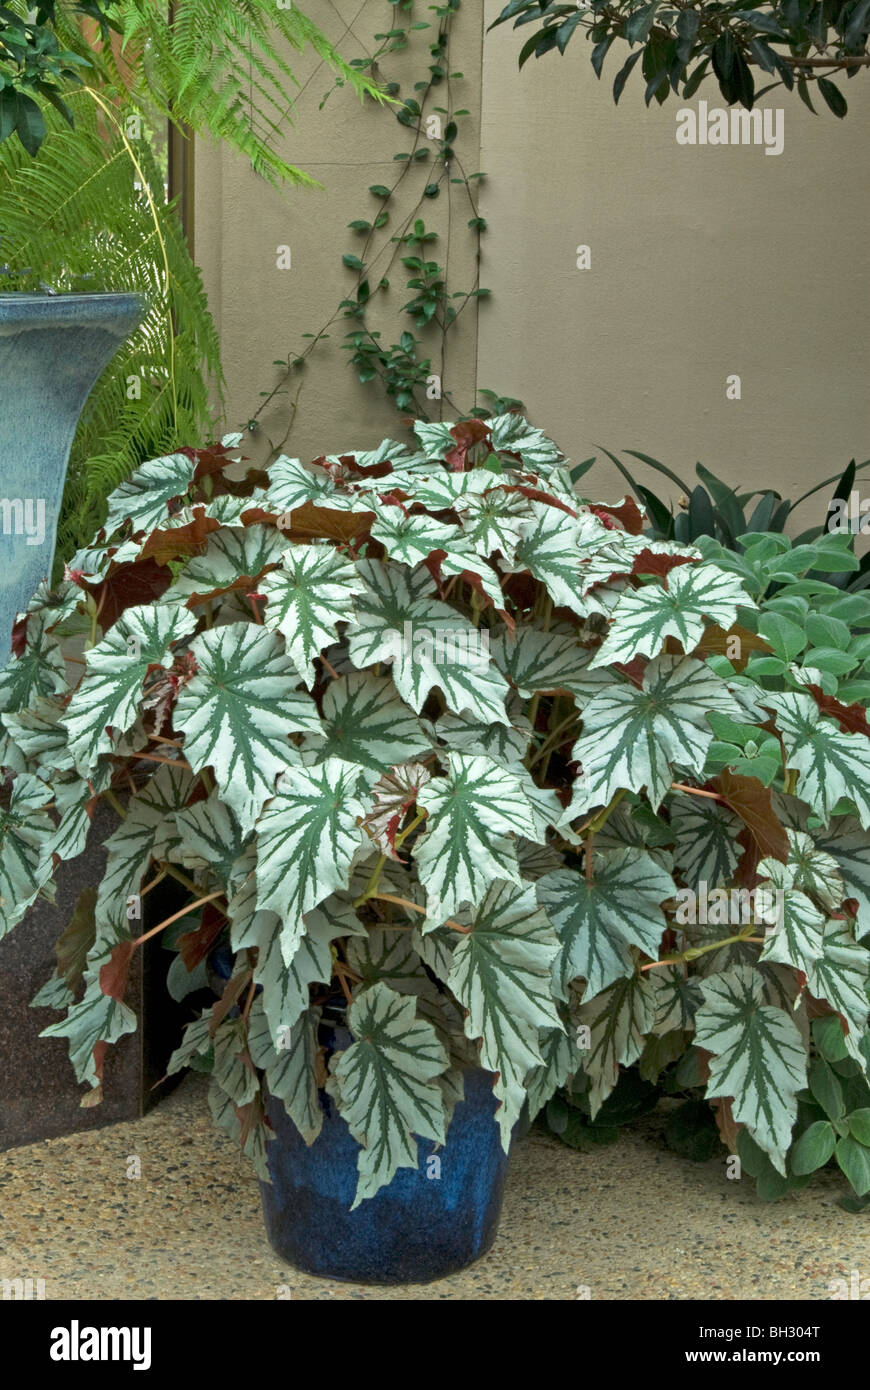 Begonia  in Ceramic Container Stock Photo